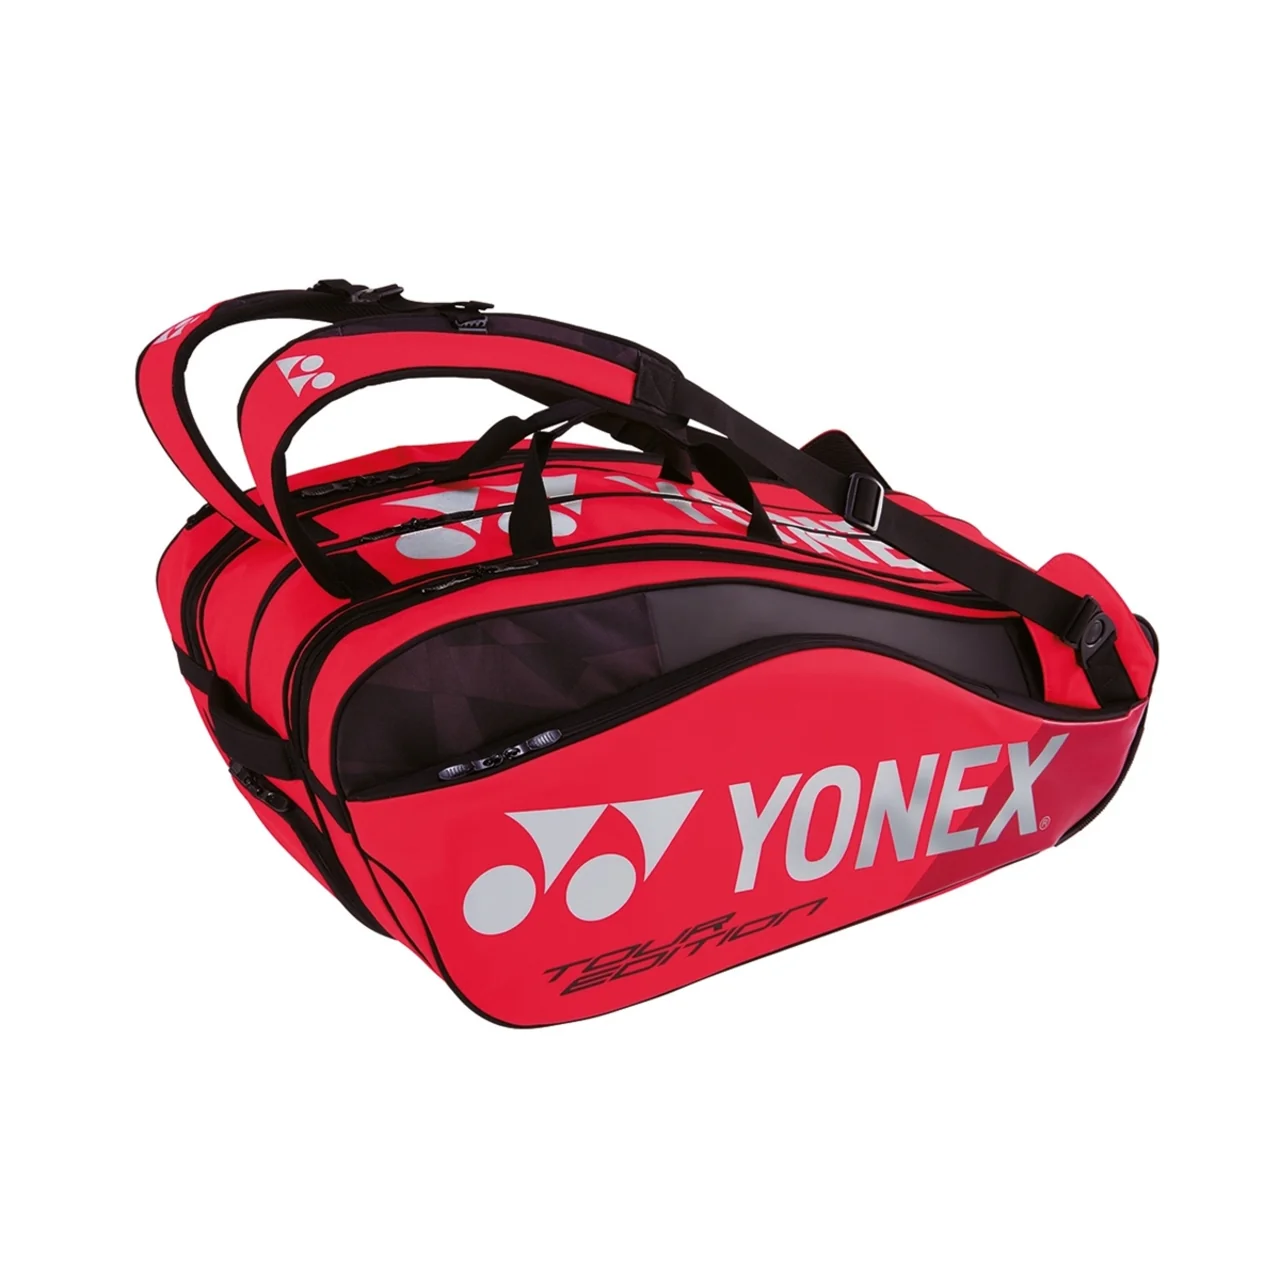 Yonex Pro Bag x9 Flame Red